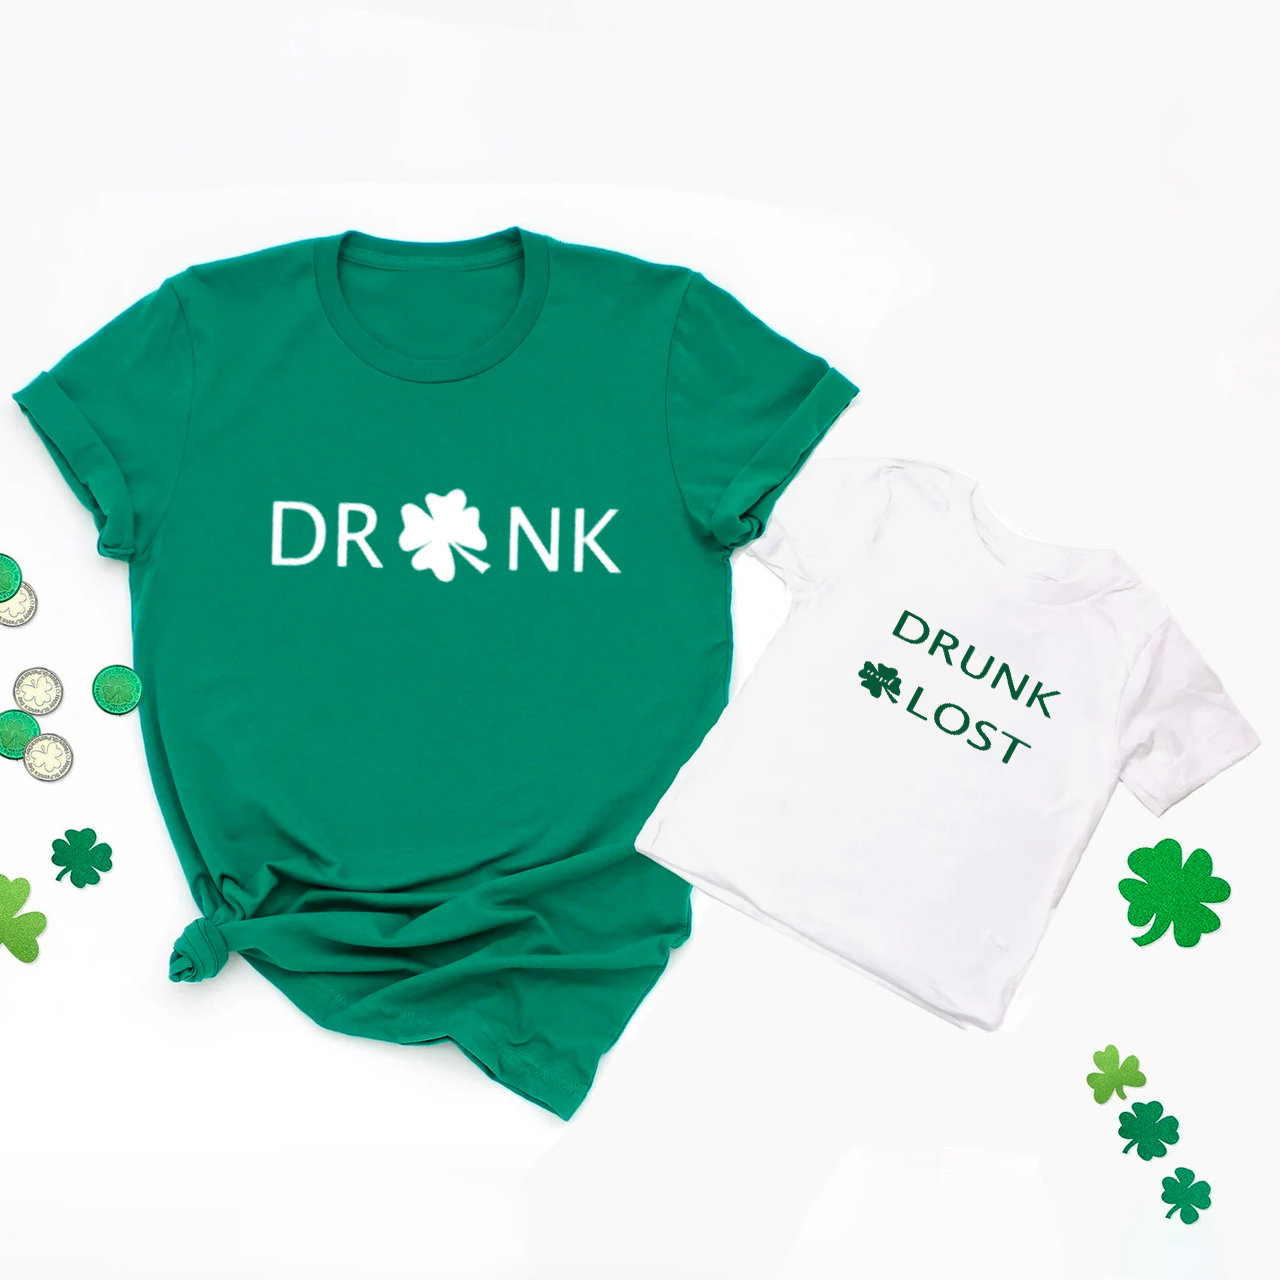 Fun Drinking Matching Shirts - St Patrick's Day